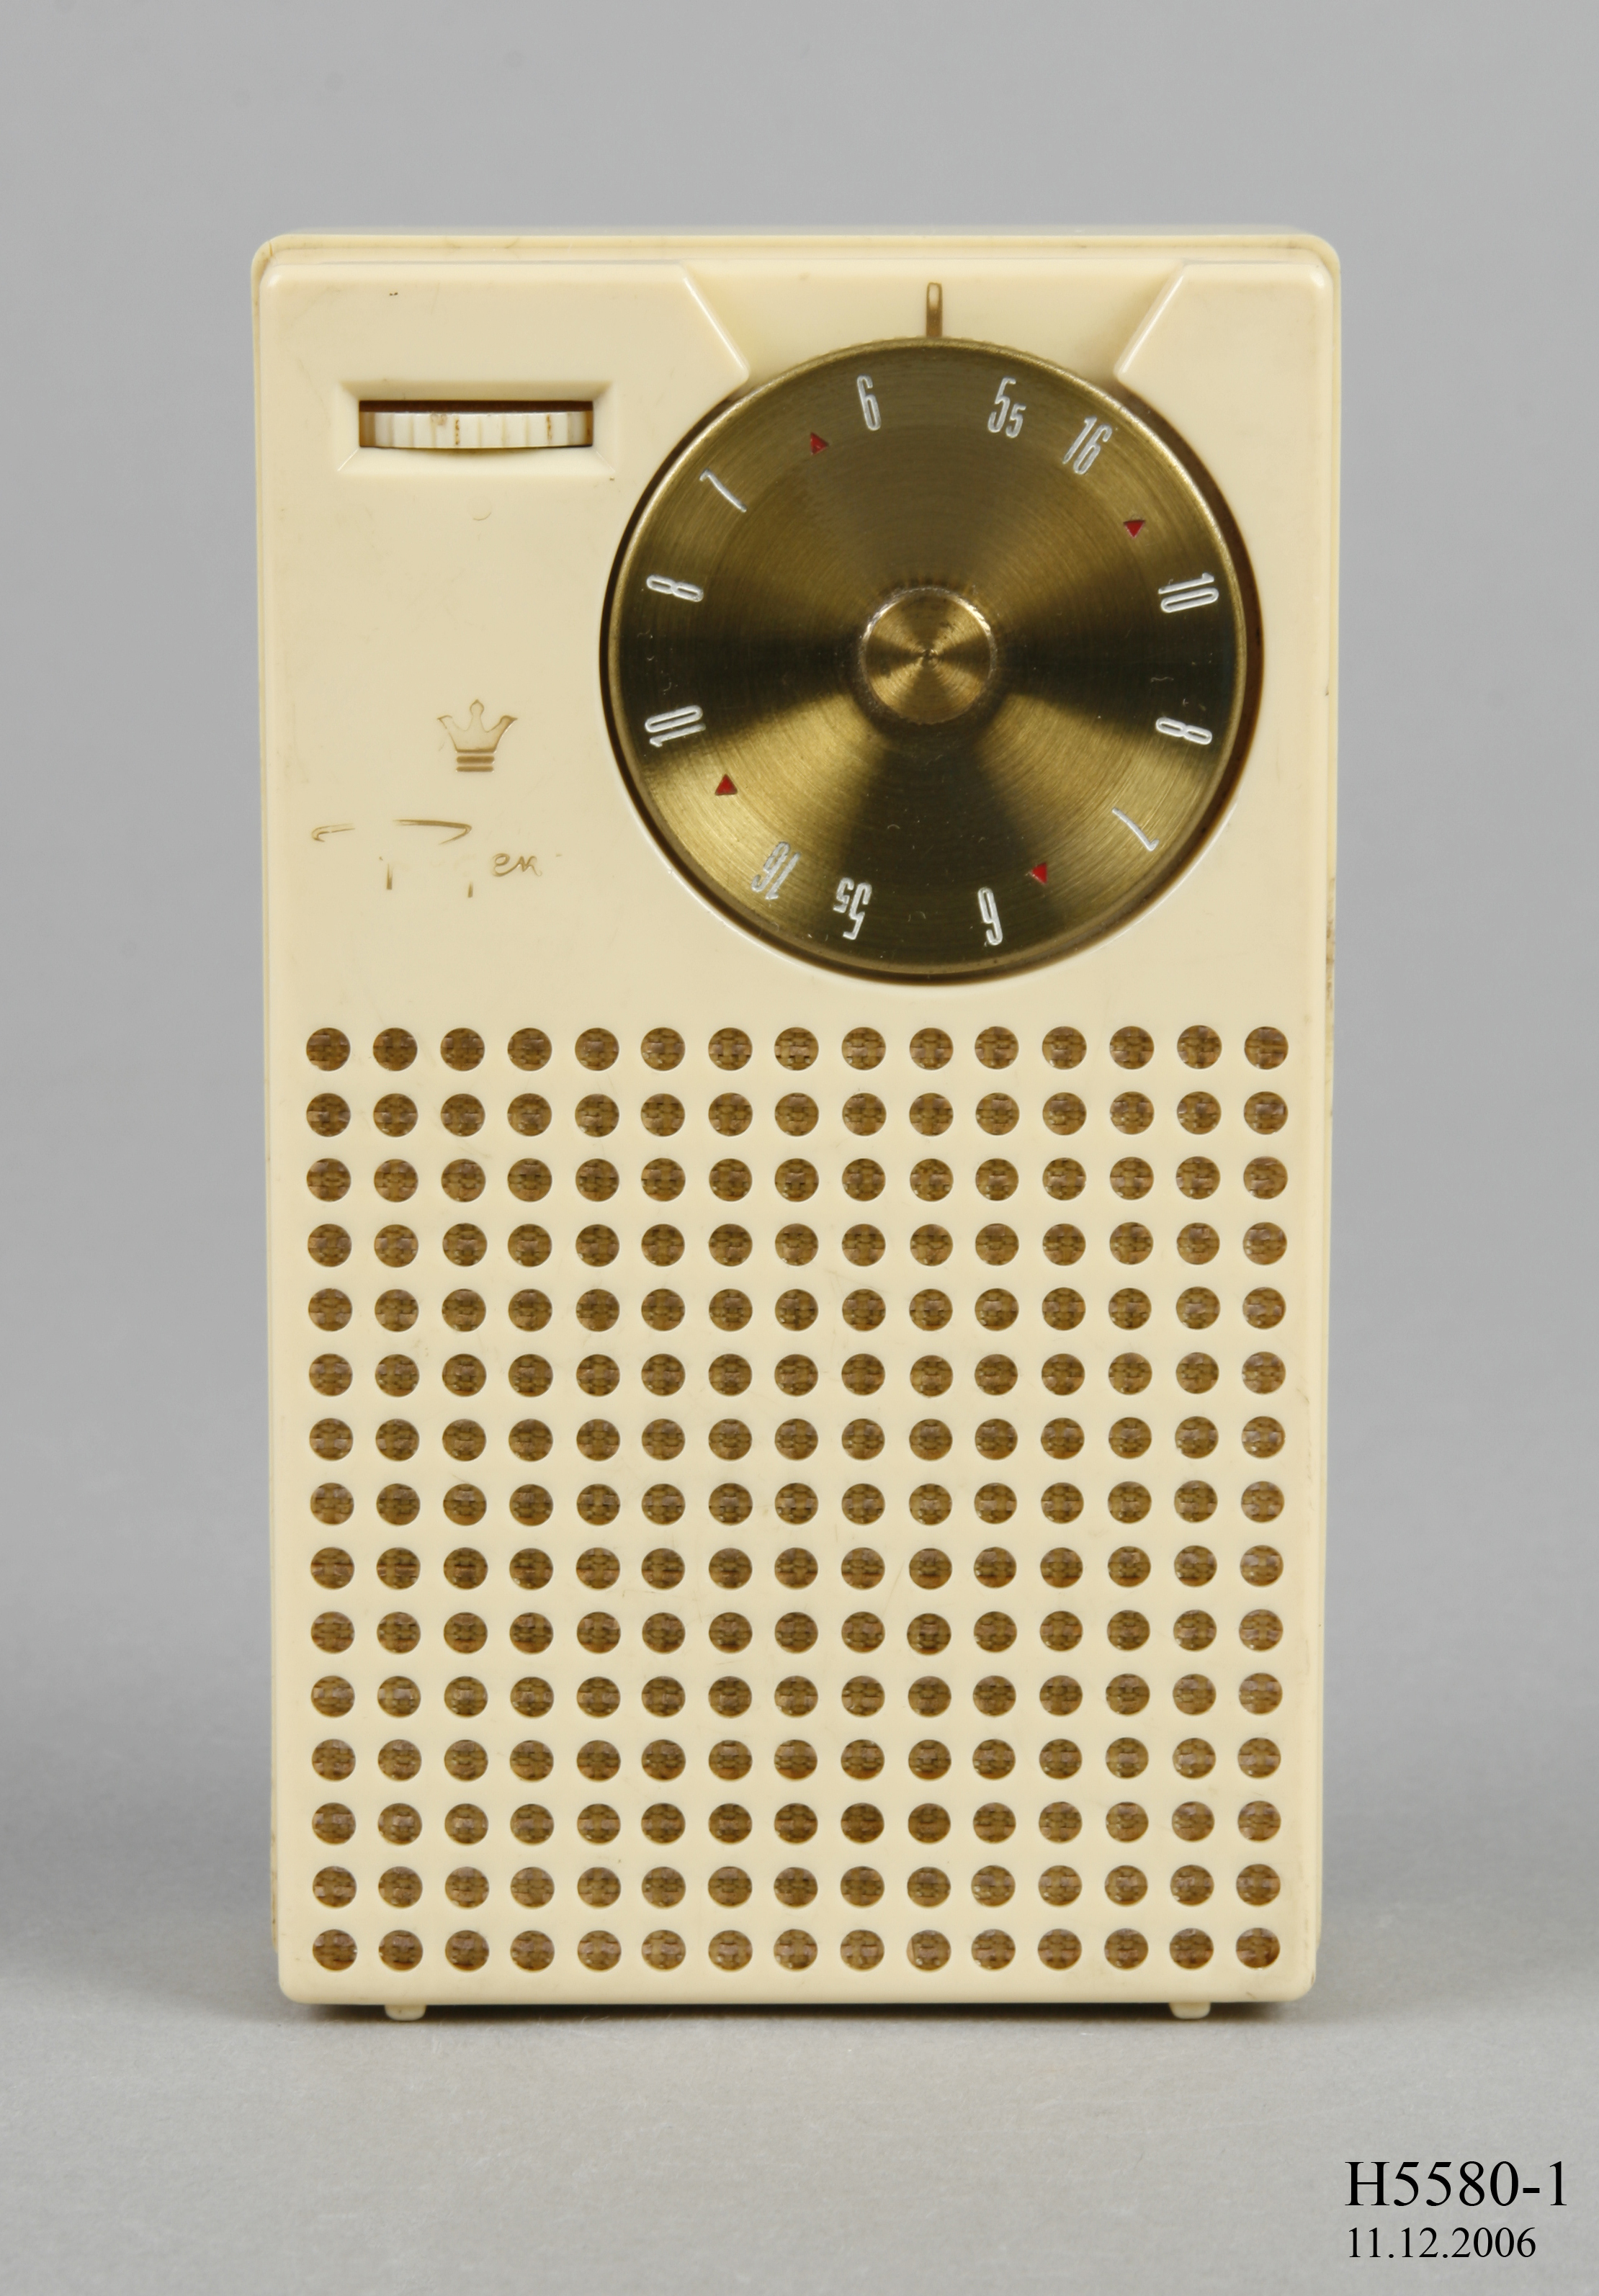 Regency model transistor radios